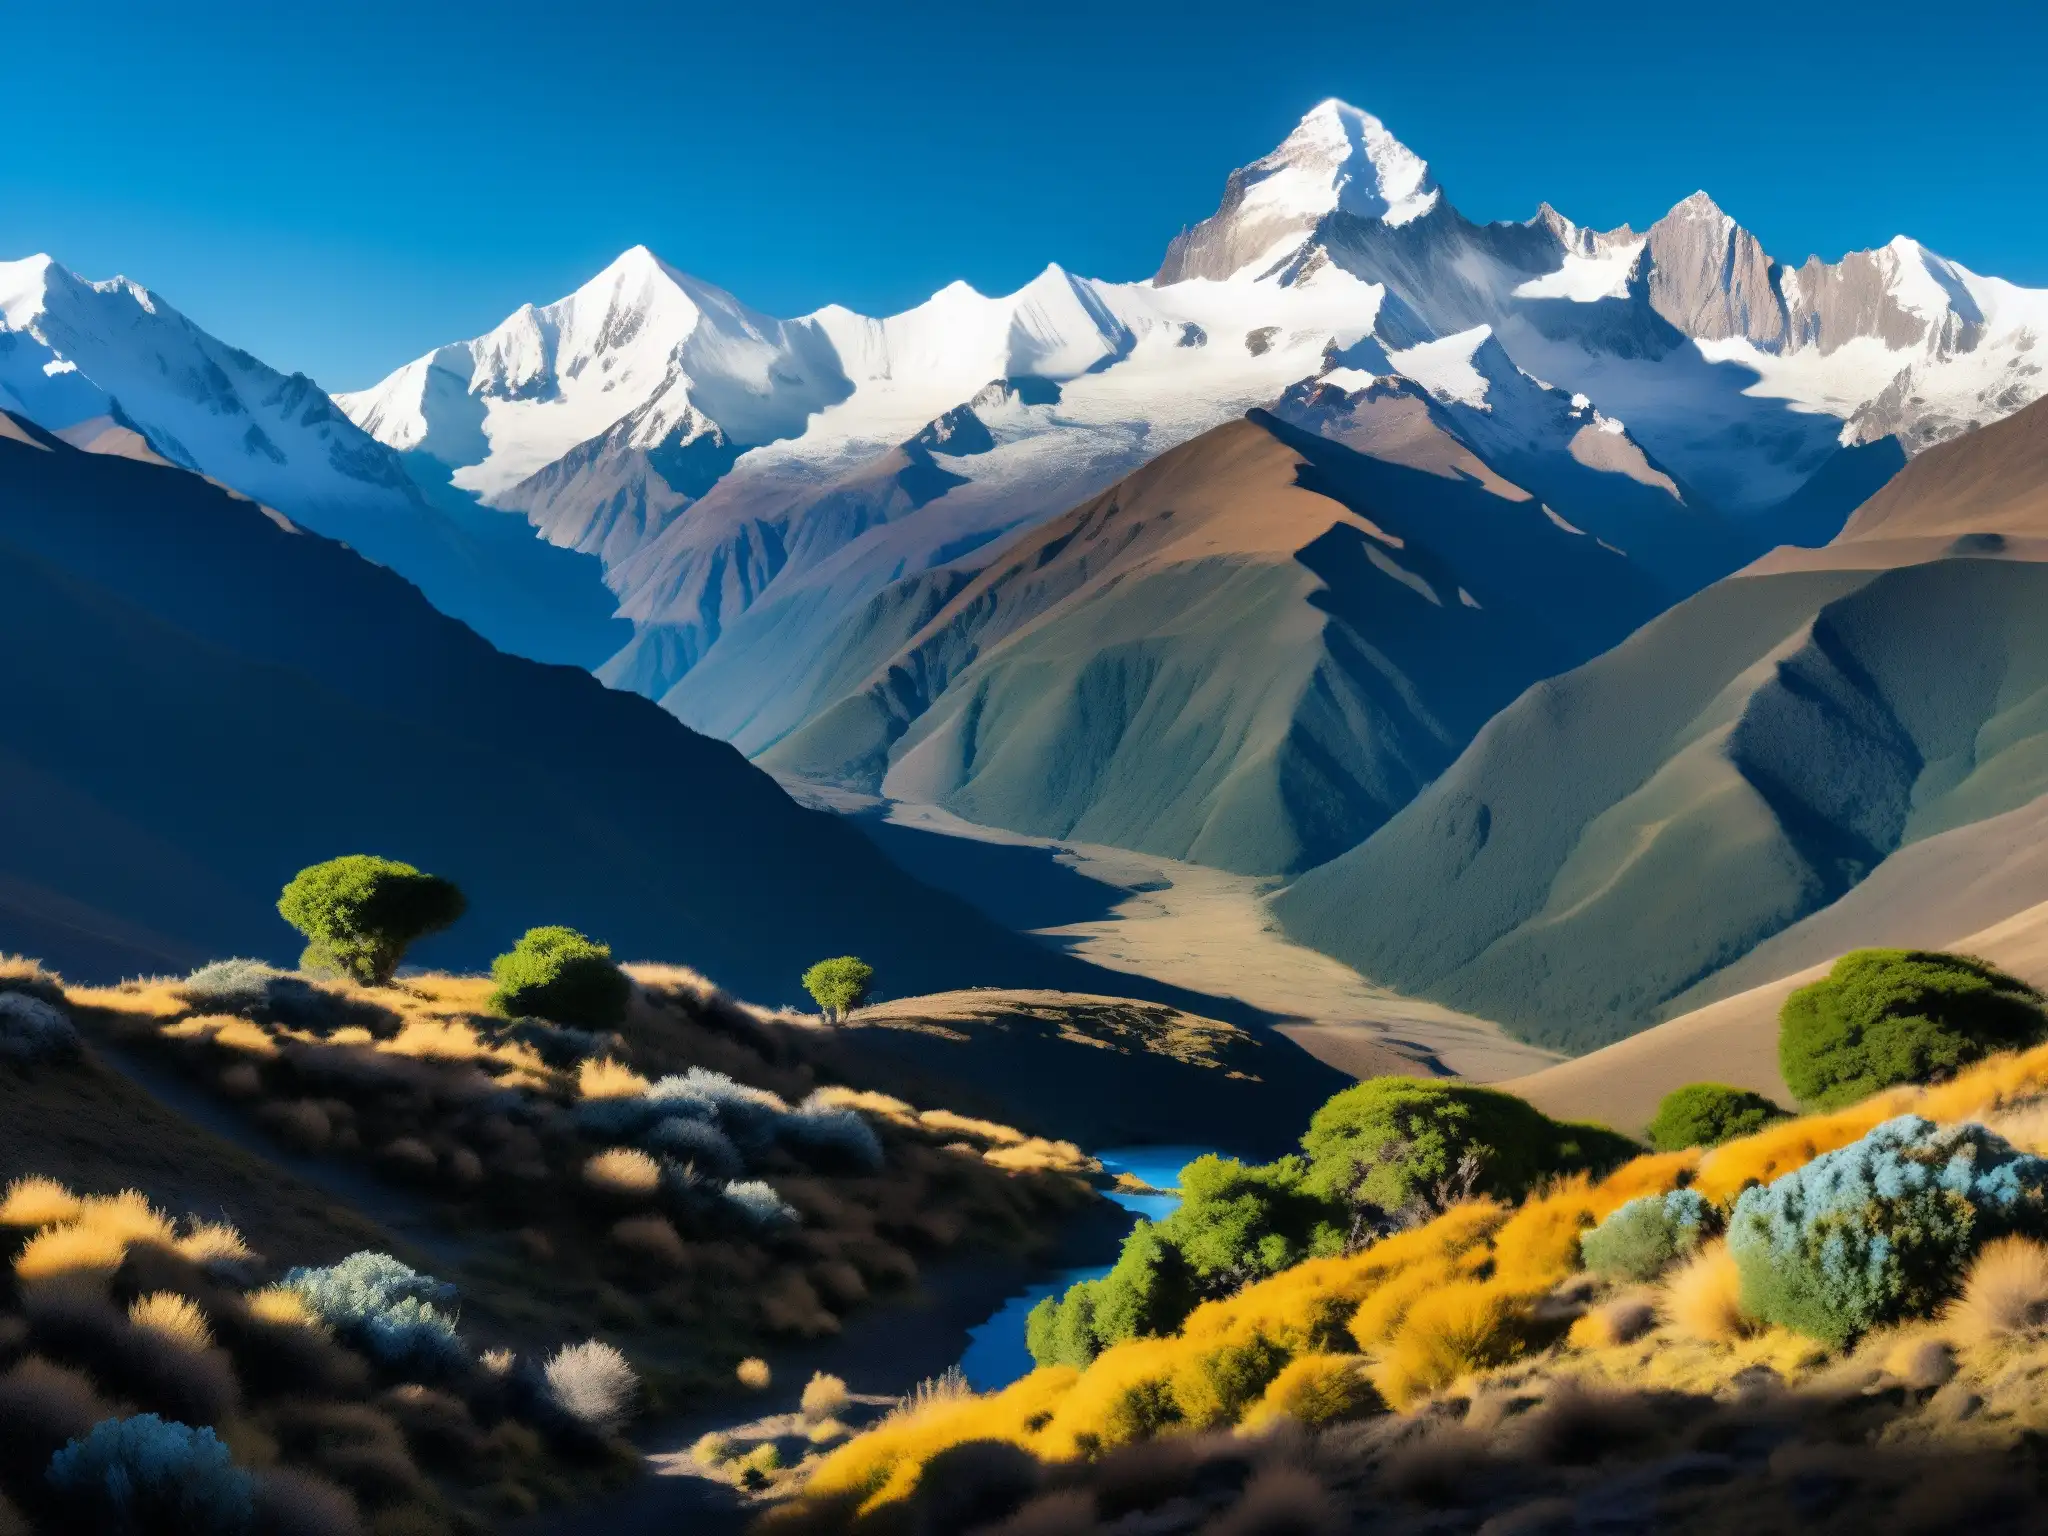 Los imponentes picos nevados de los Andes se alzan sobre un valle, bañados por la luz del sol y un cielo azul